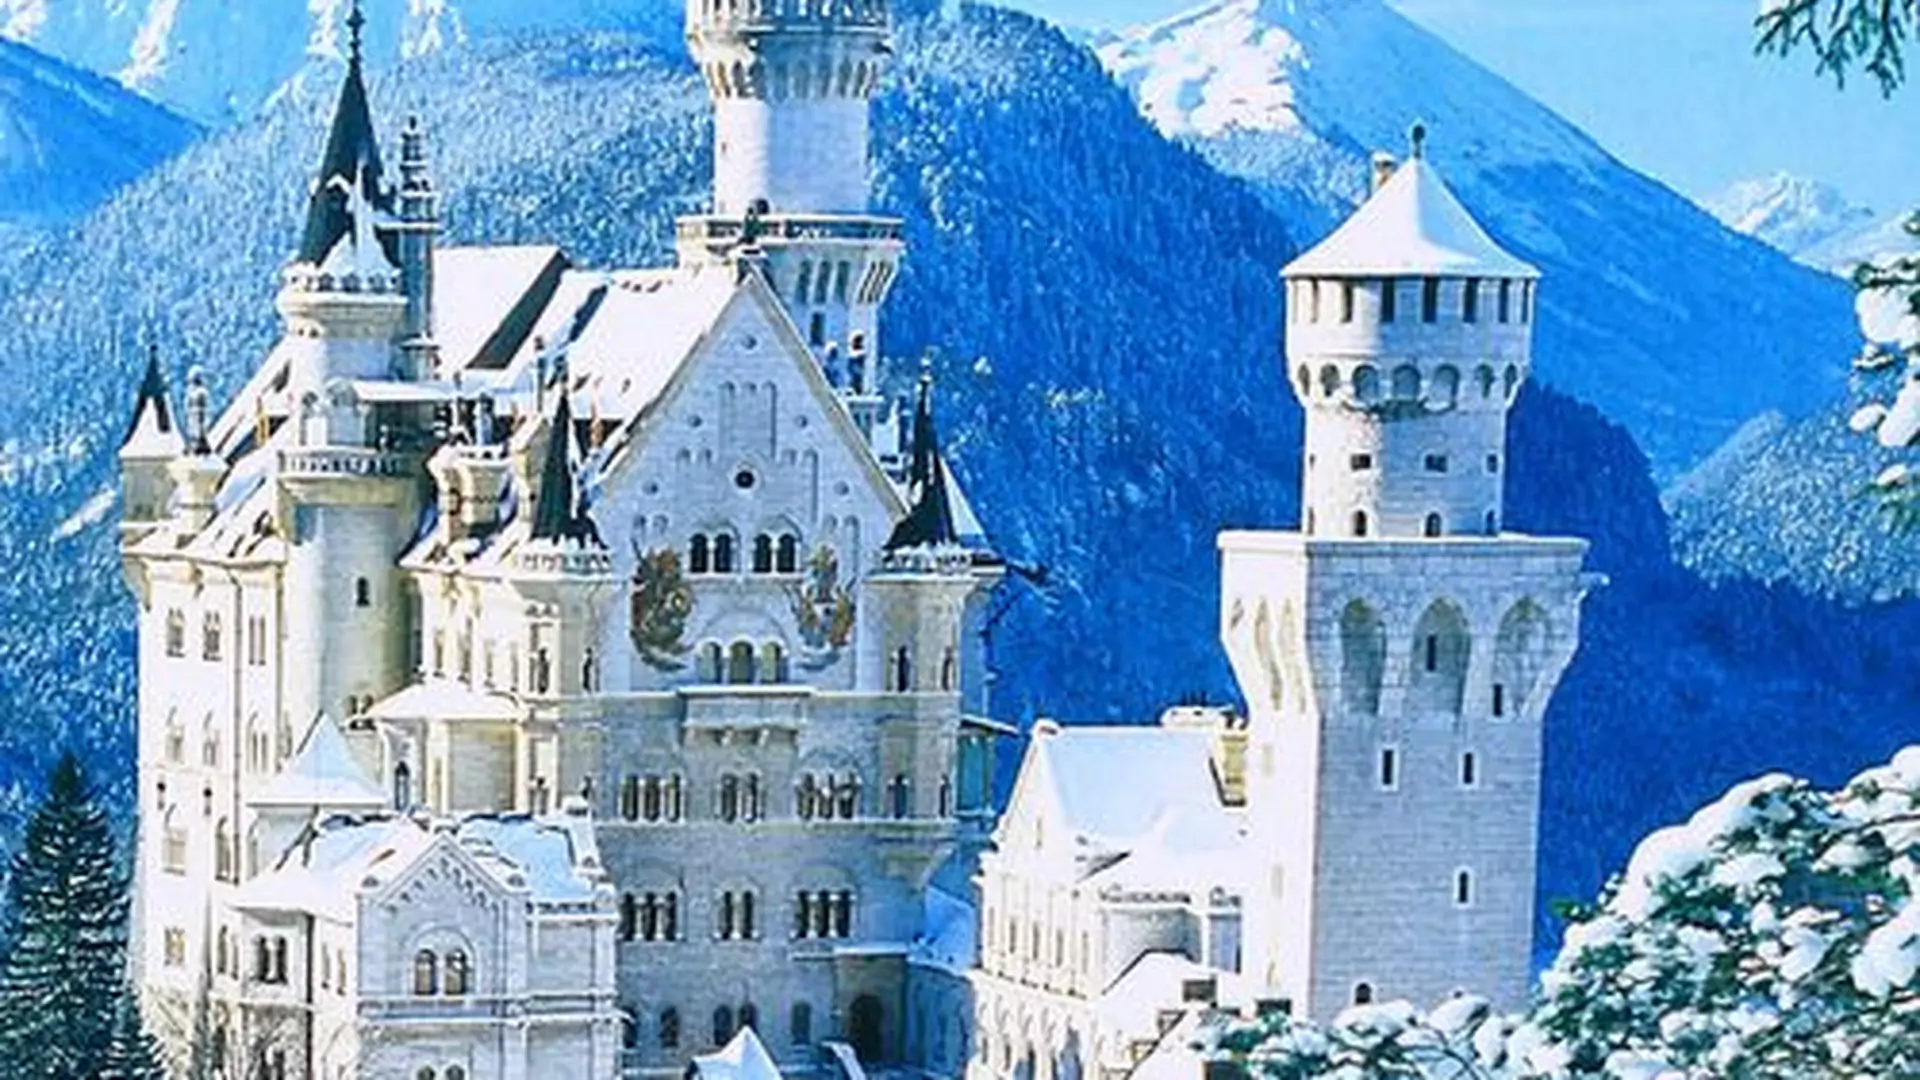 Pałac jak z Disneya i to kilka godzin od Polski - zimą jest pełen magii